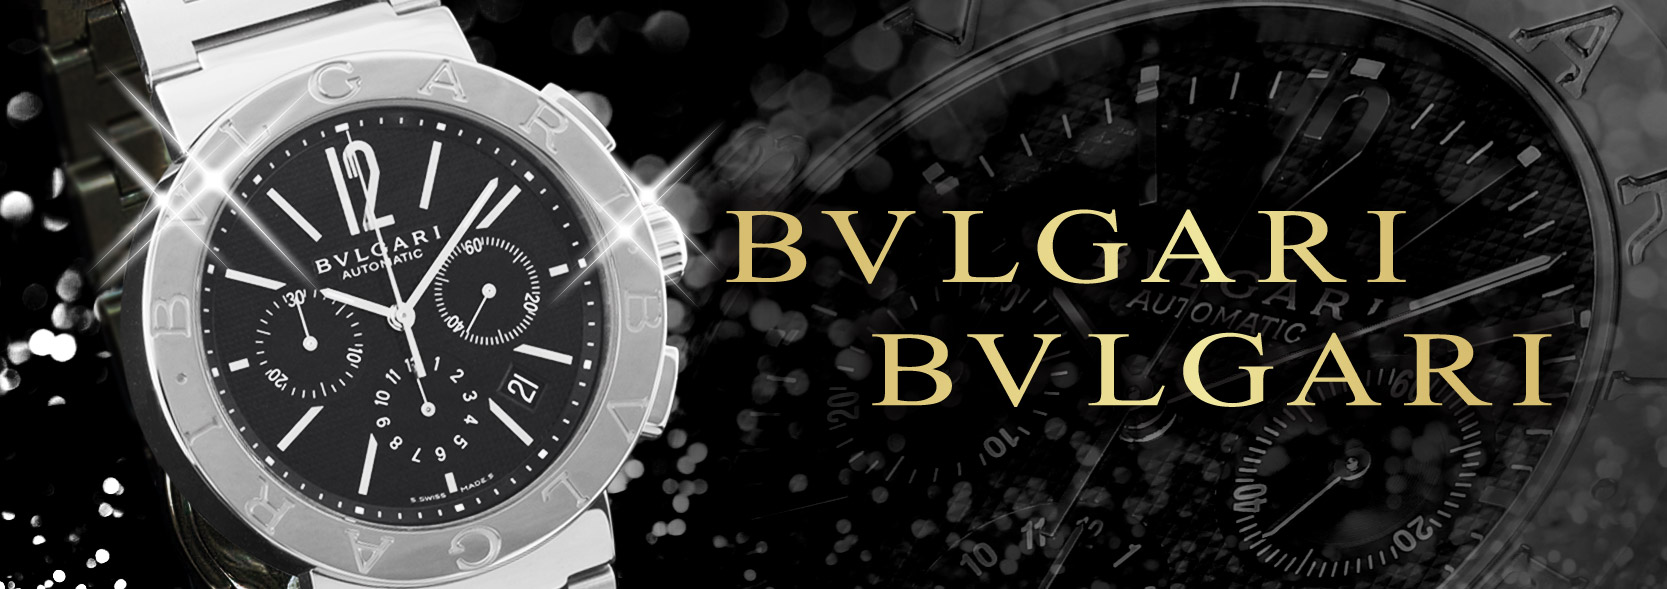 ブルガリ BVLGARI 腕時計通販ブルークウォッチカンパニー